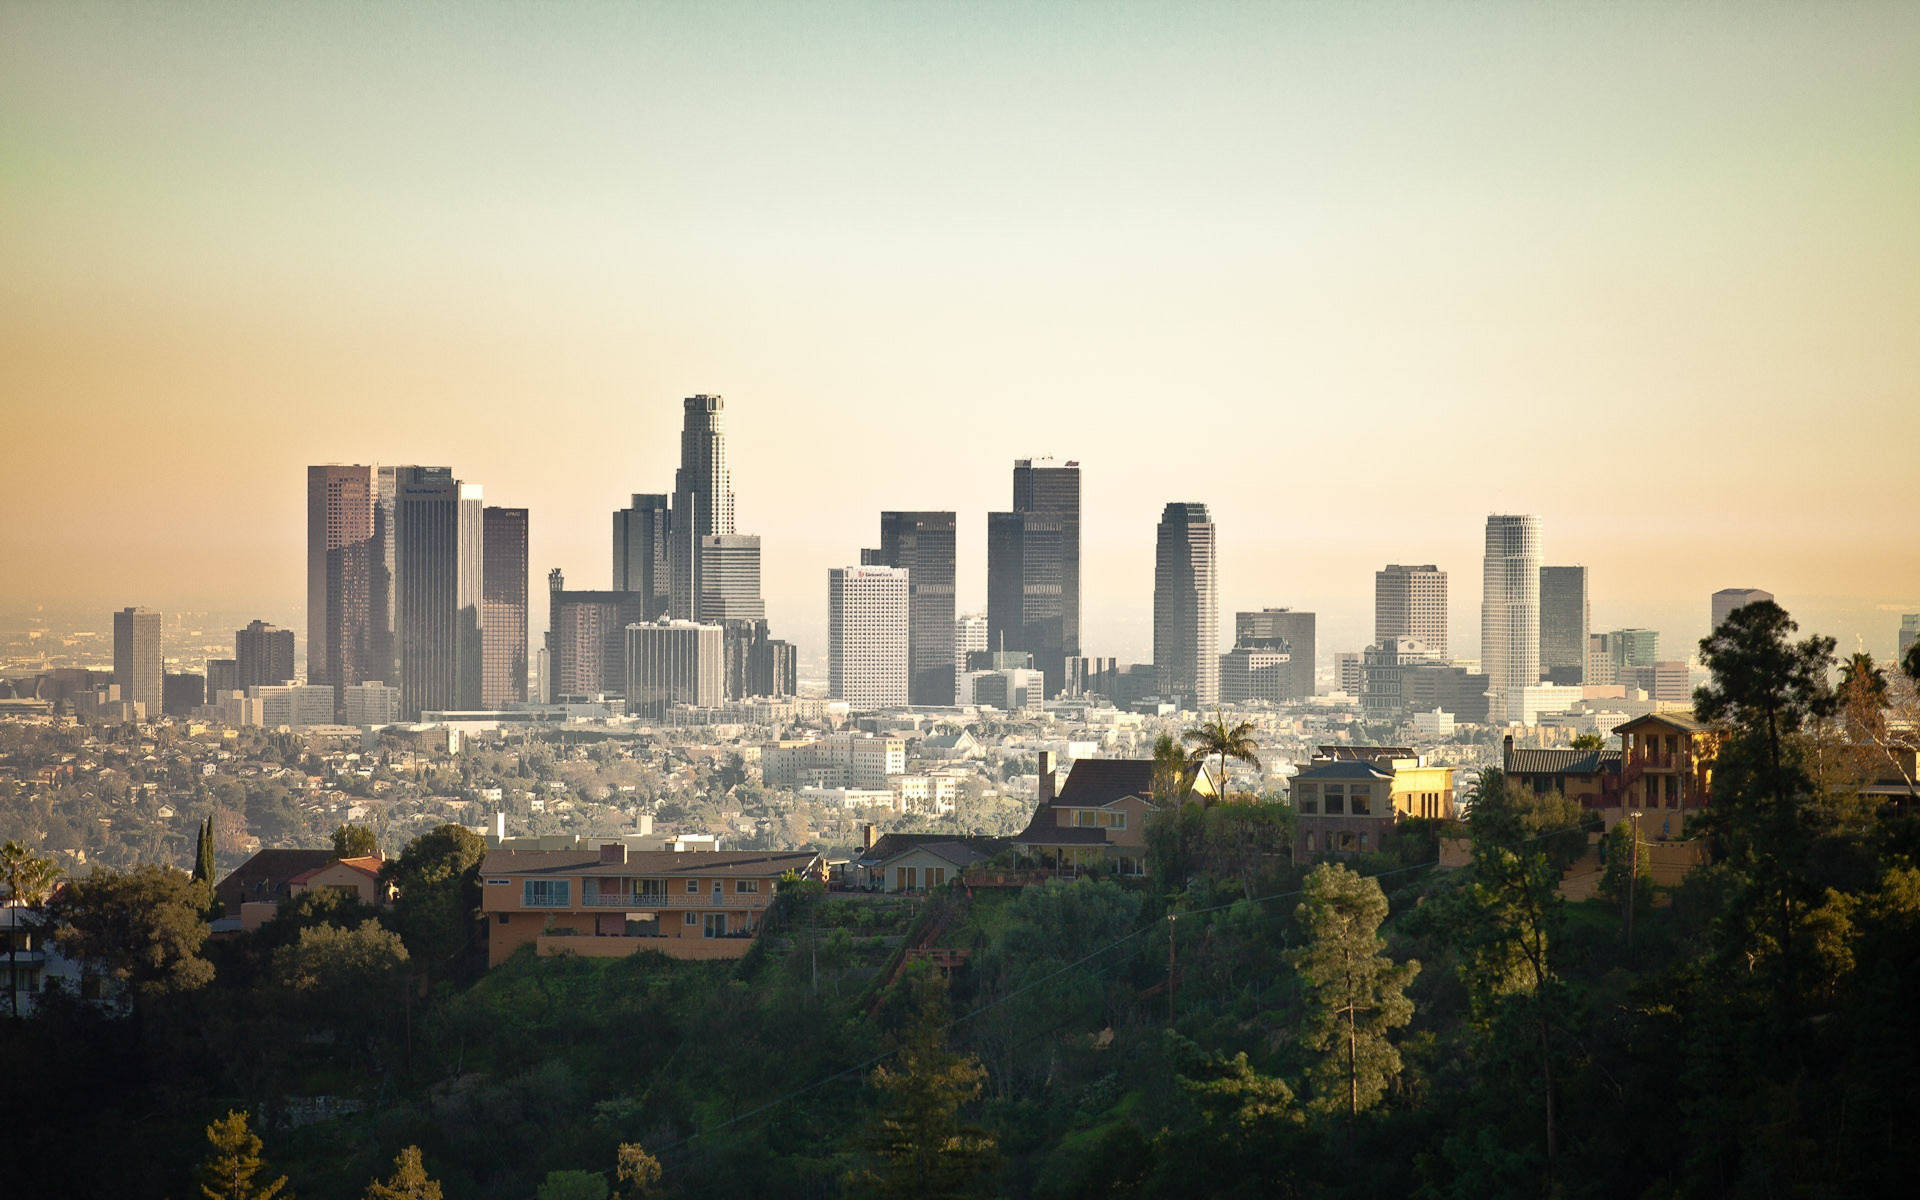 Neighborhoods And Buildings In Los Angeles 4k Wallpaper